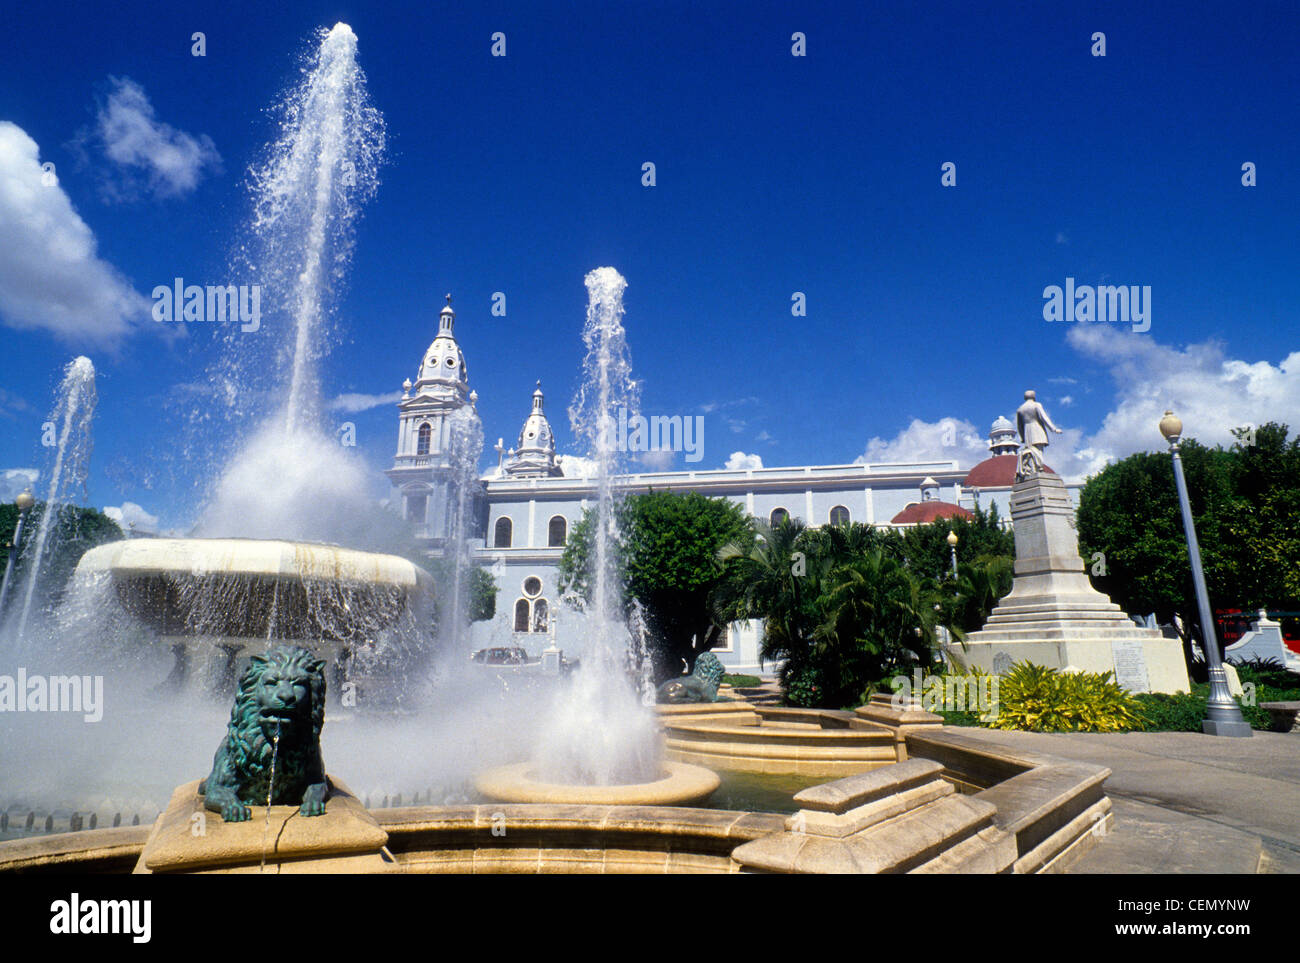 Statue plaza las delicias ponce fotografías e imágenes de alta resolución -  Alamy